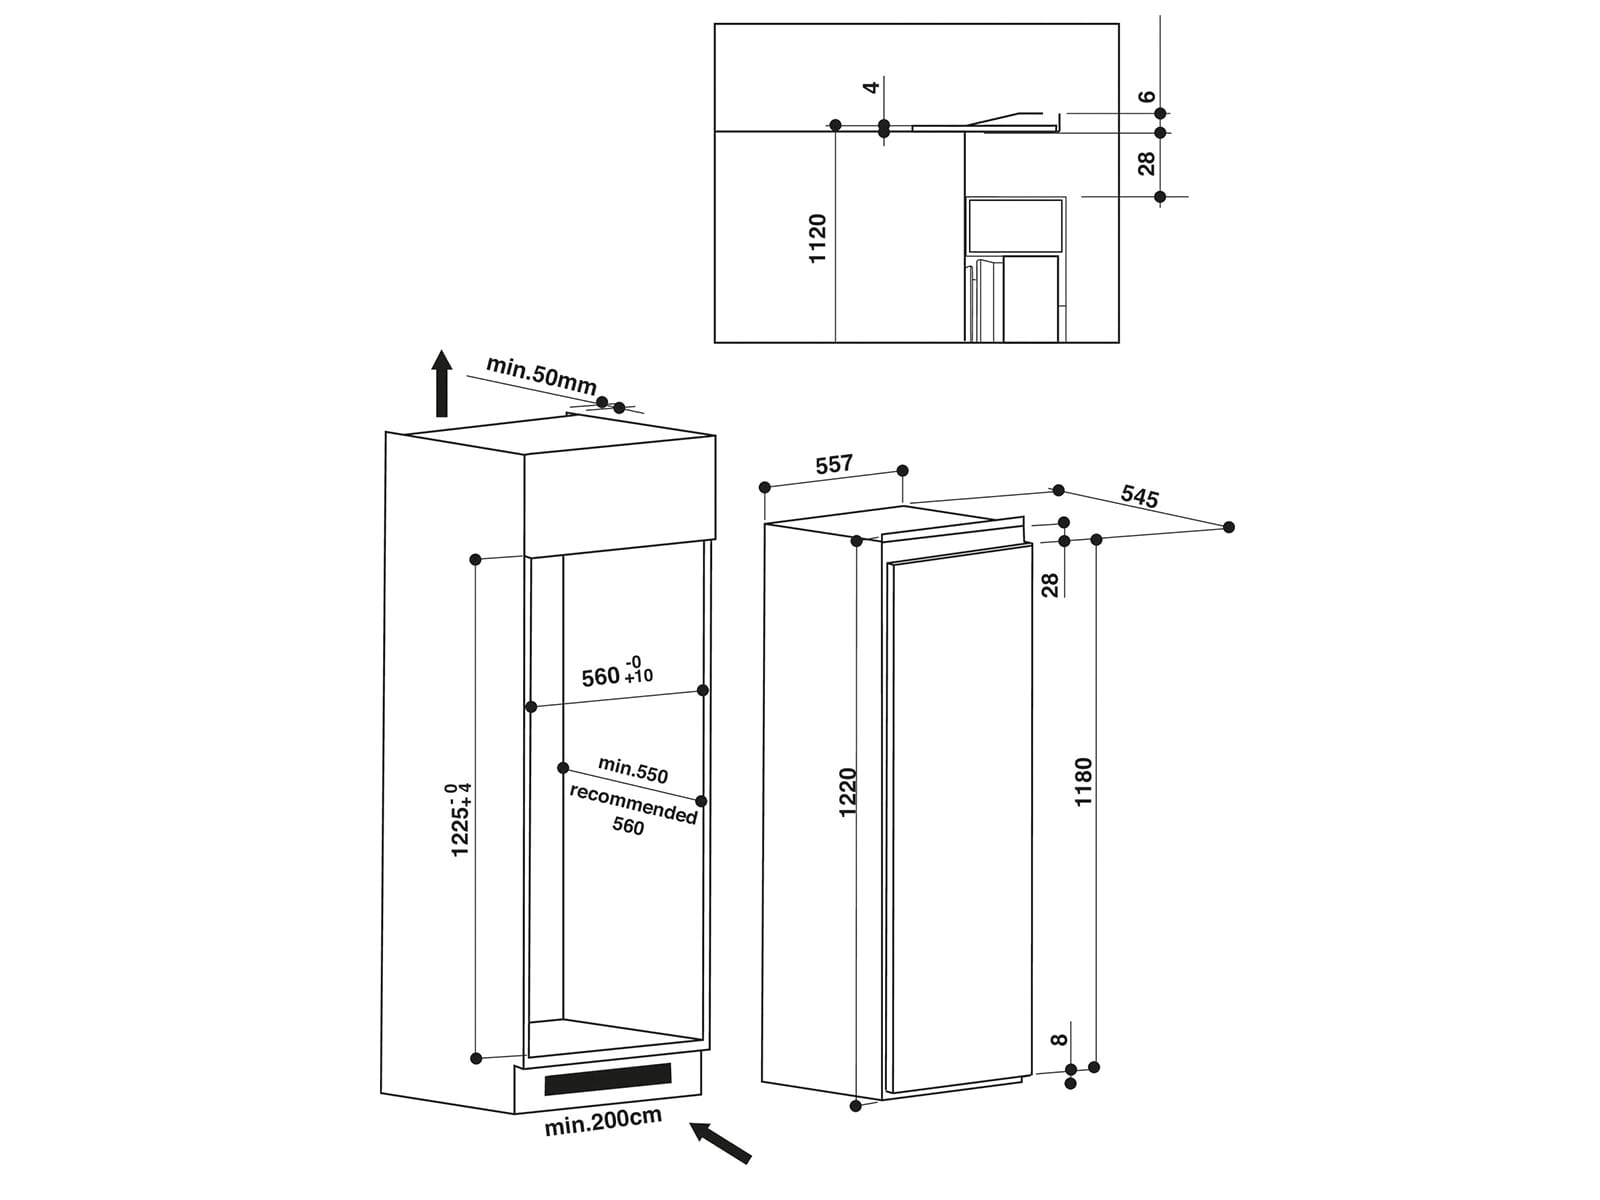 Bauknecht KSI 12VF3 Einbaukühlschrank | Kühlschränke